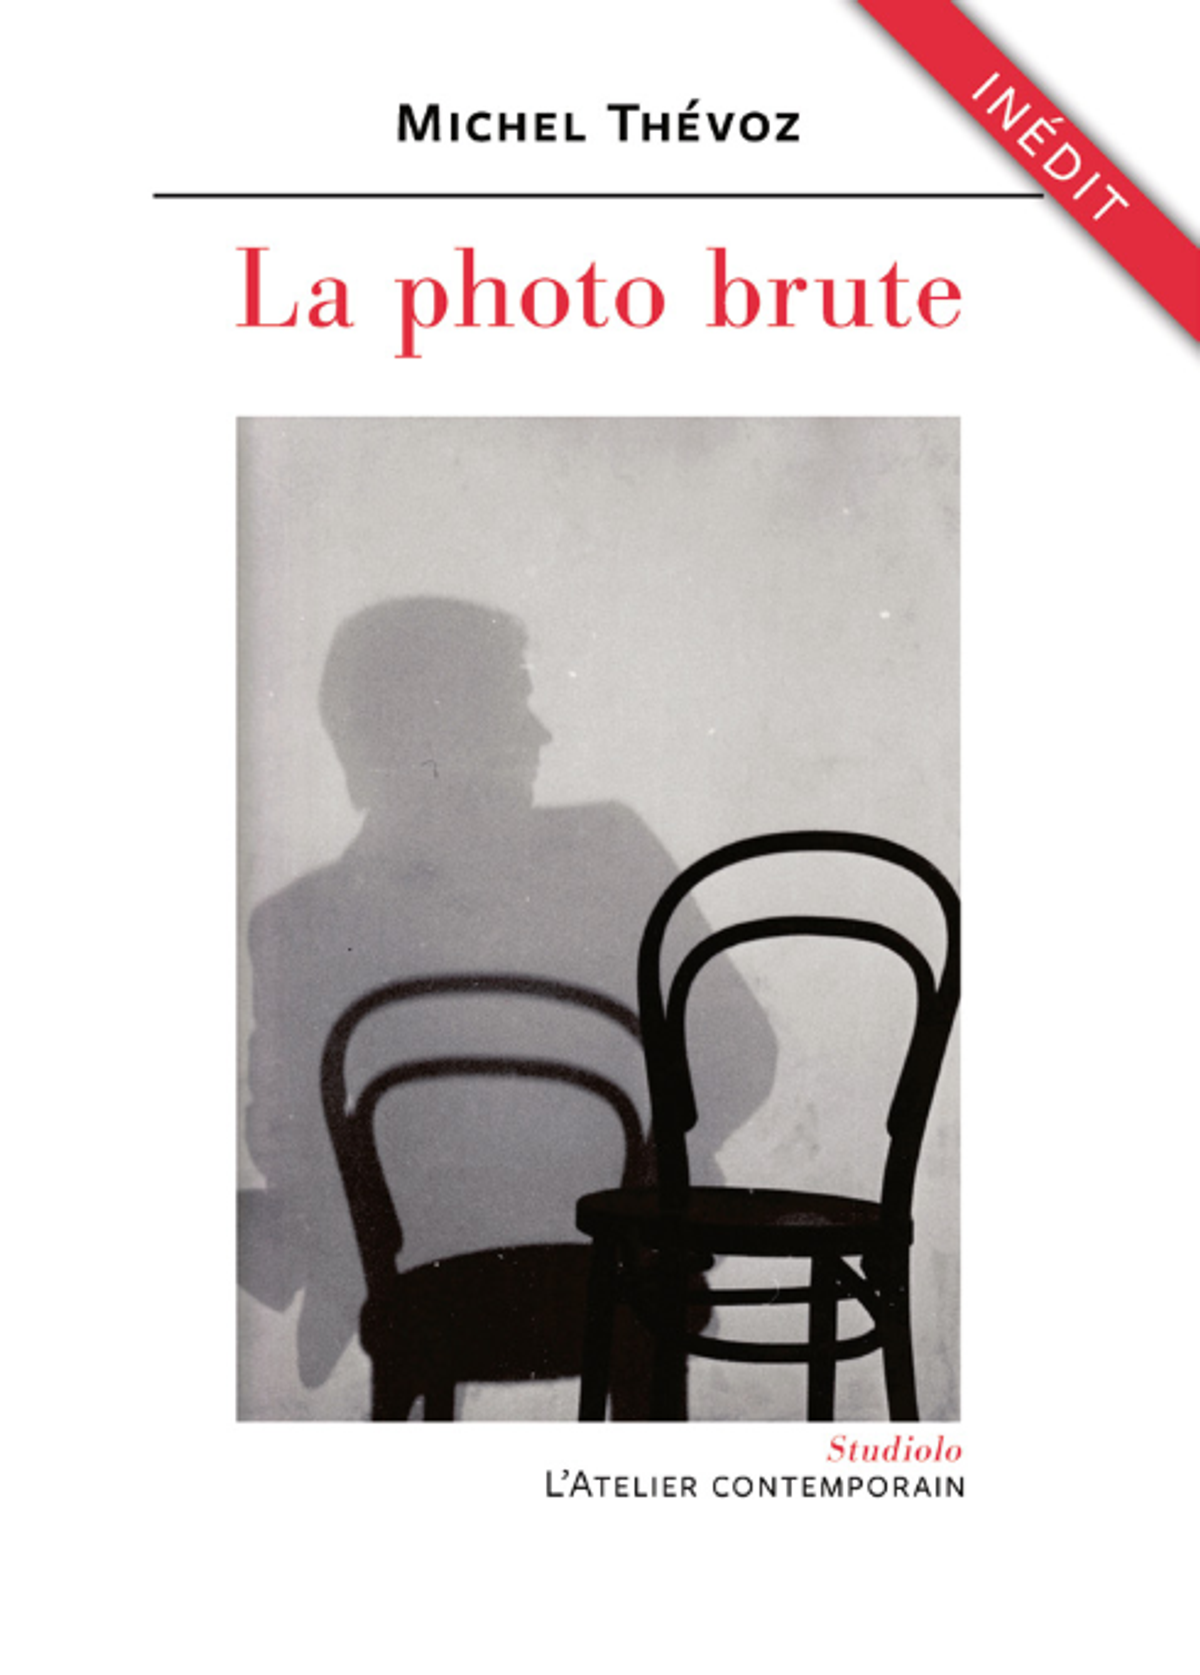 Michel Thévoz, La Photo brute, Strasbourg, L’Atelier contemporain, 2023, 192 pages, 8,50 euros.